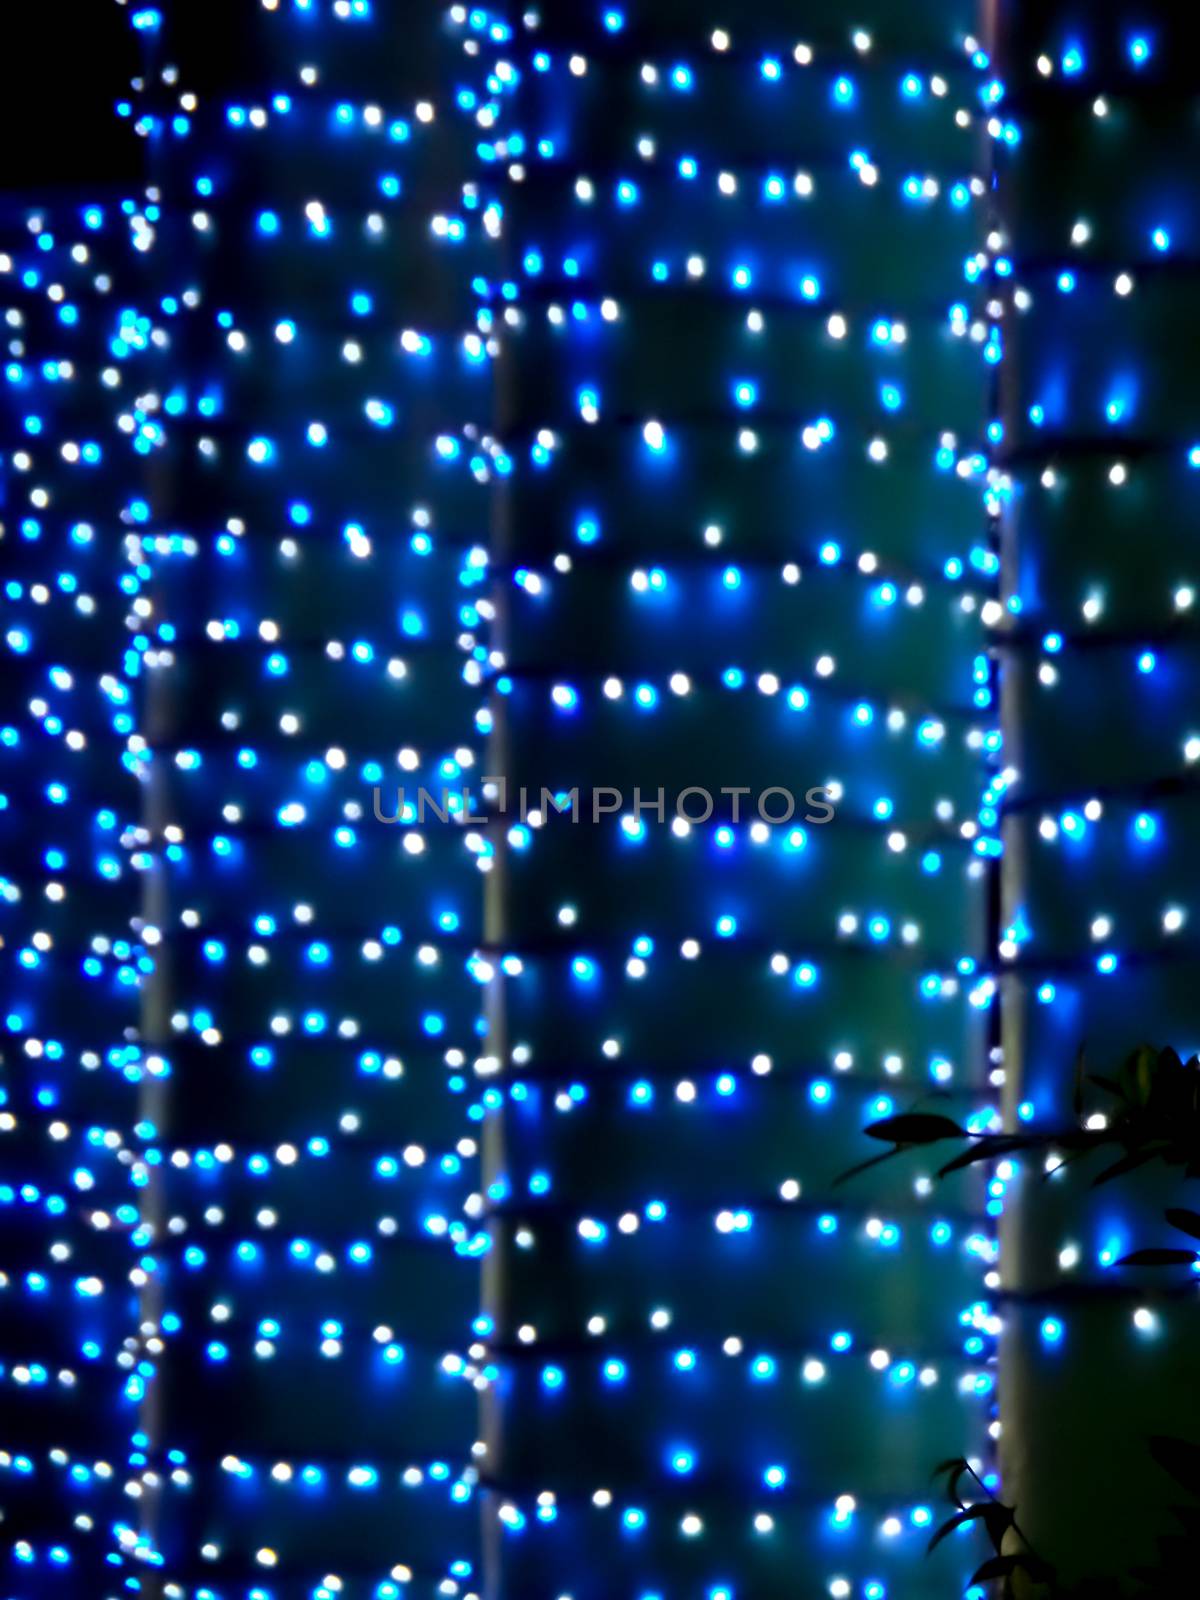 blue of blur light on pilla at pattaya party night market in night summer